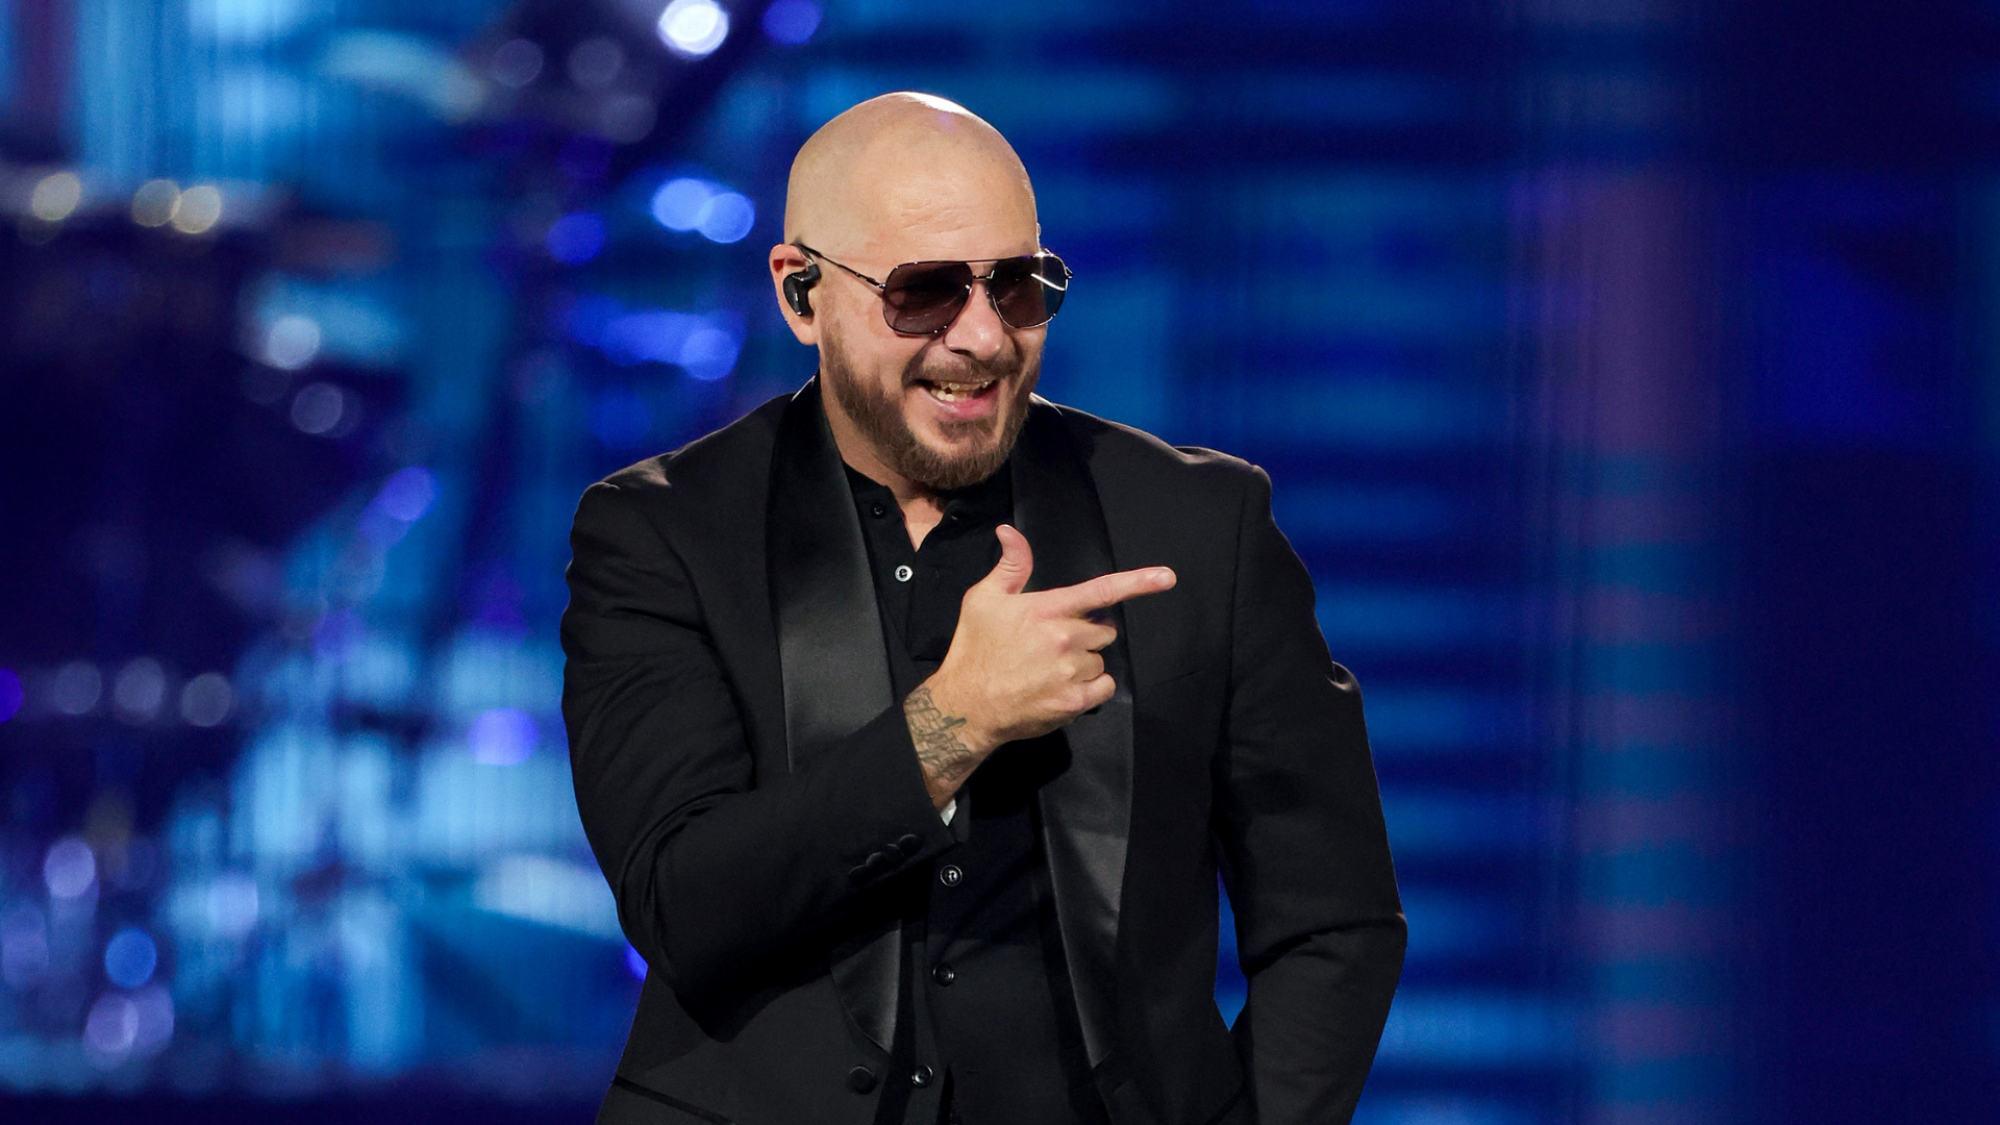 Pitbull (le chanteur) avec des lunettes noires et un smoking noir.